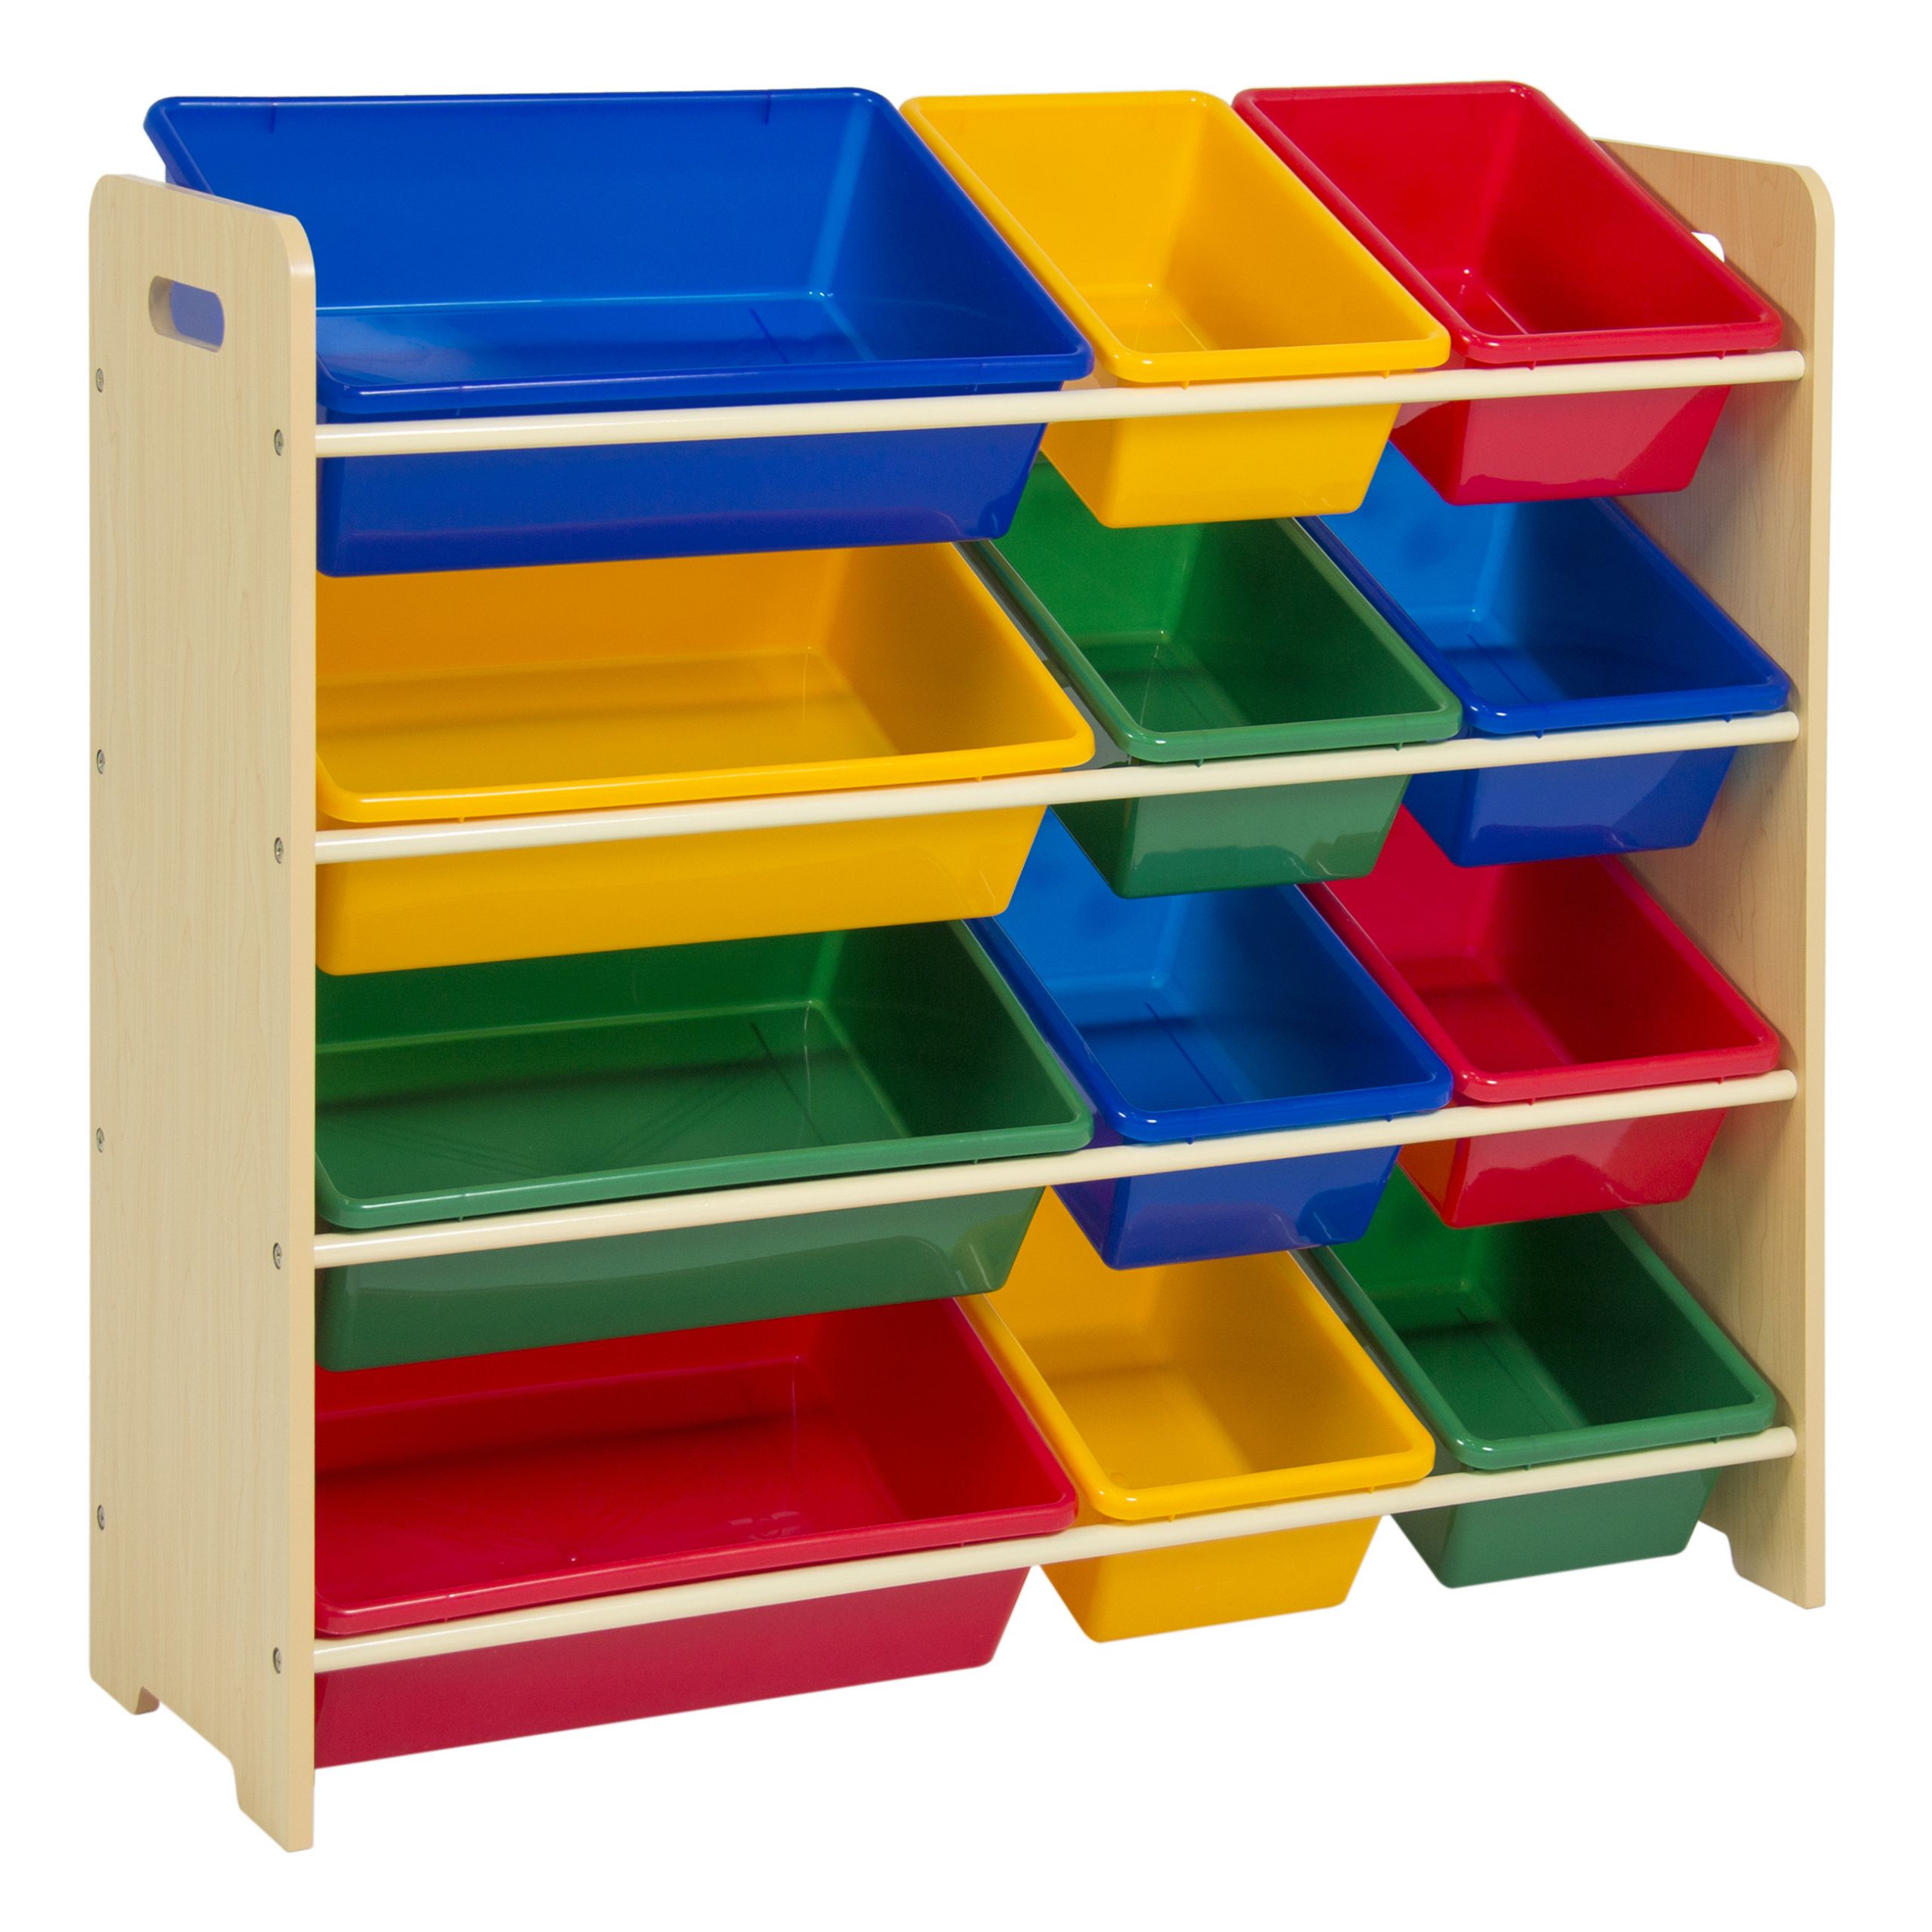 Kids Storage Boxes
 Toy Bin Organizer Kids Childrens Storage Box Playroom